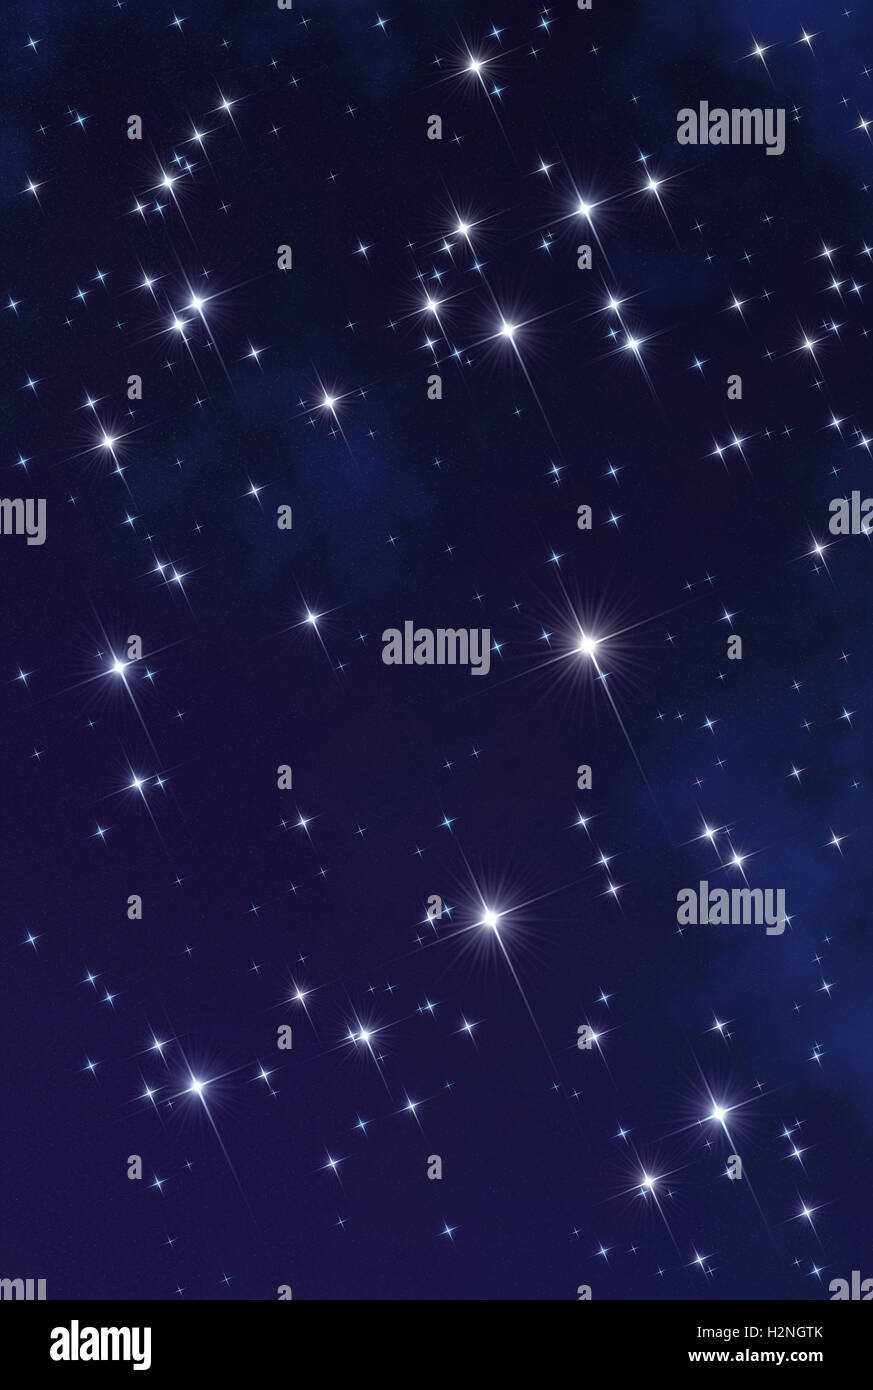 Illustrazione astratta che rappresenta lo spazio profondo concetto: scintillanti stelle scintillanti con dark blue star campo come uno sfondo Foto Stock